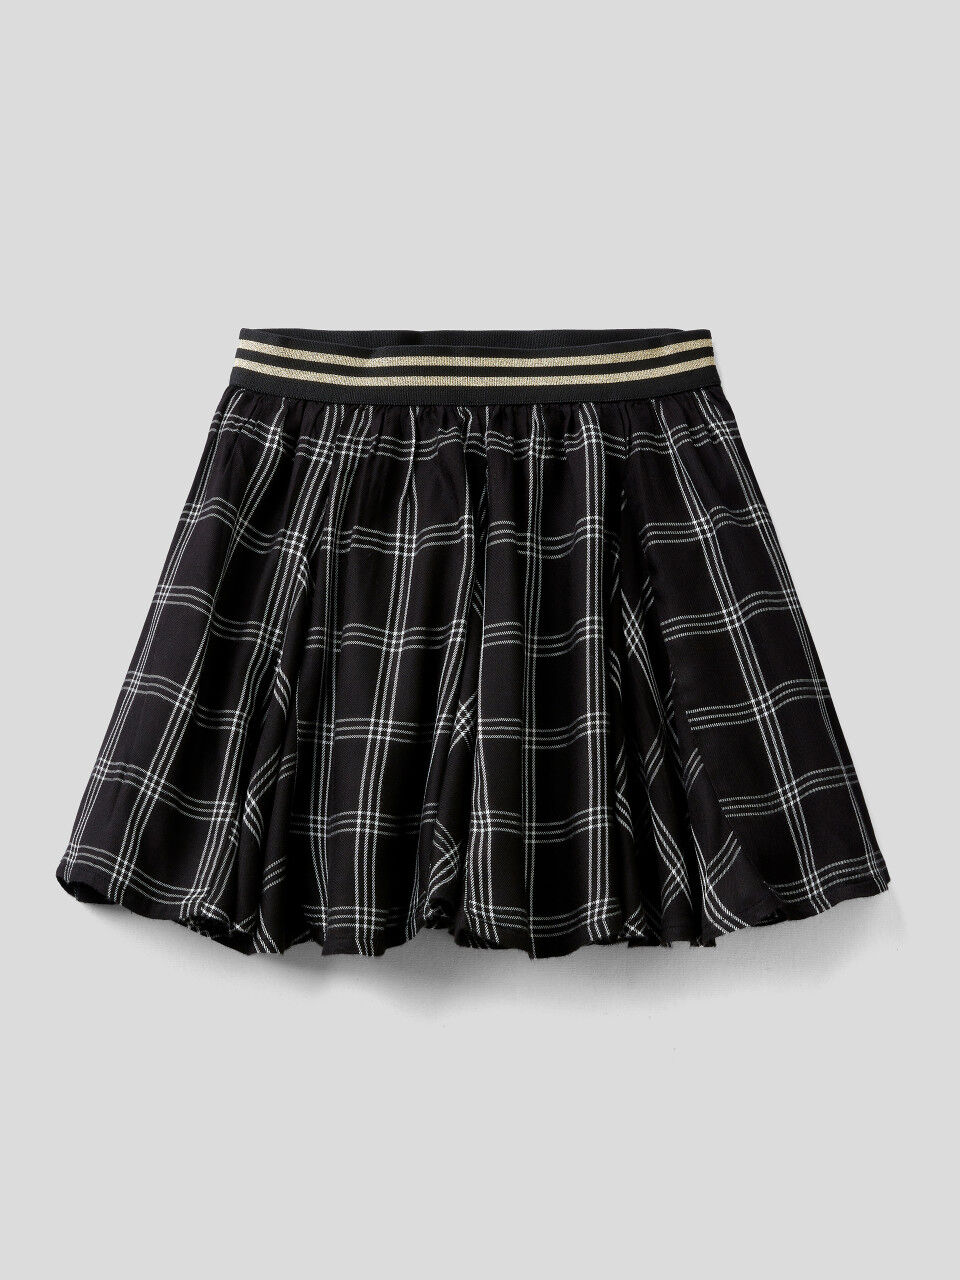 Short check skirt